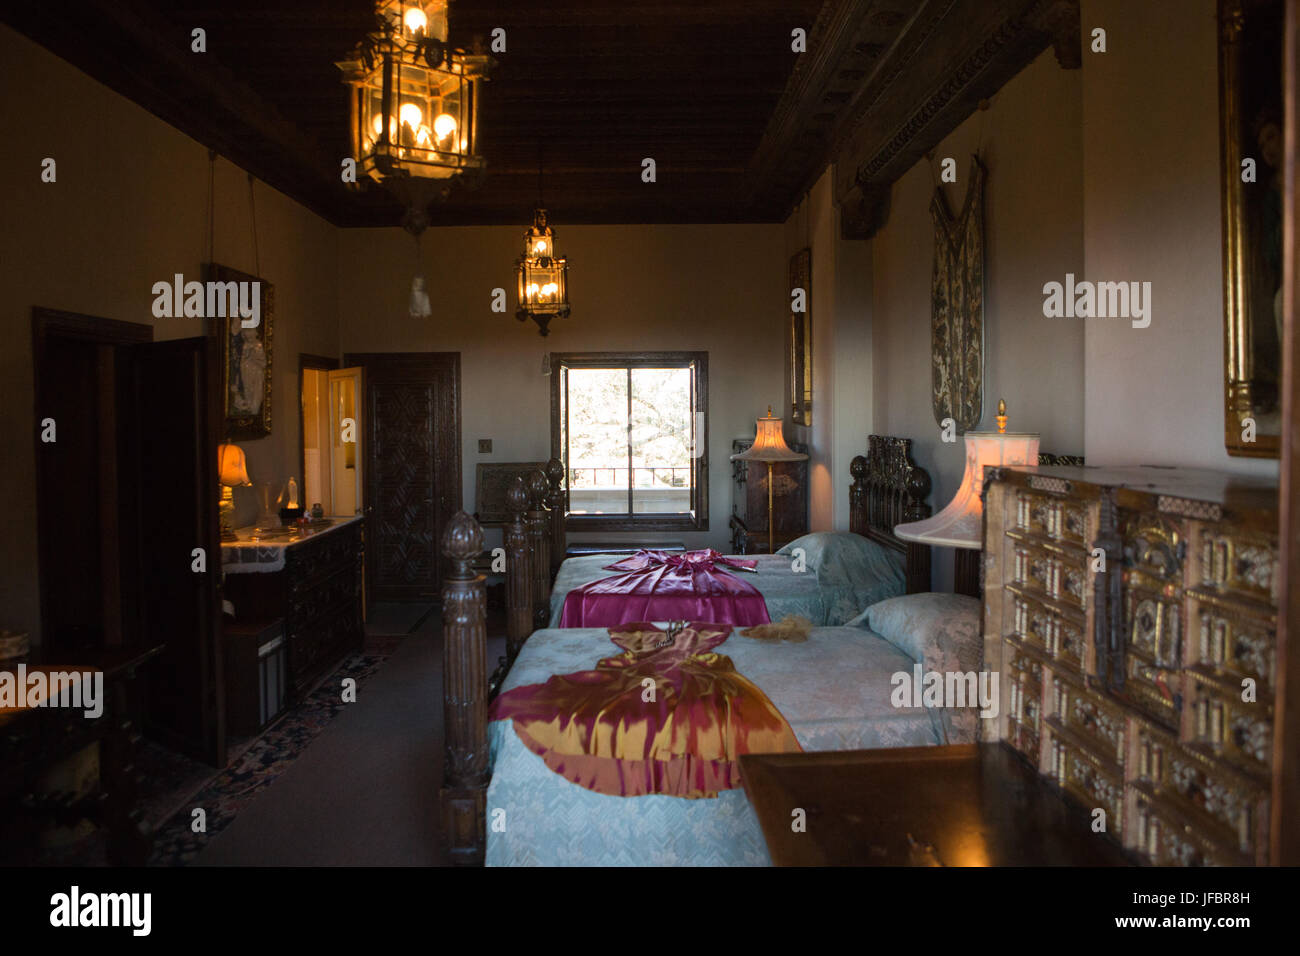 Una camera da letto arredata con mobili, artwork e ornati in apparecchi di illuminazione. Foto Stock